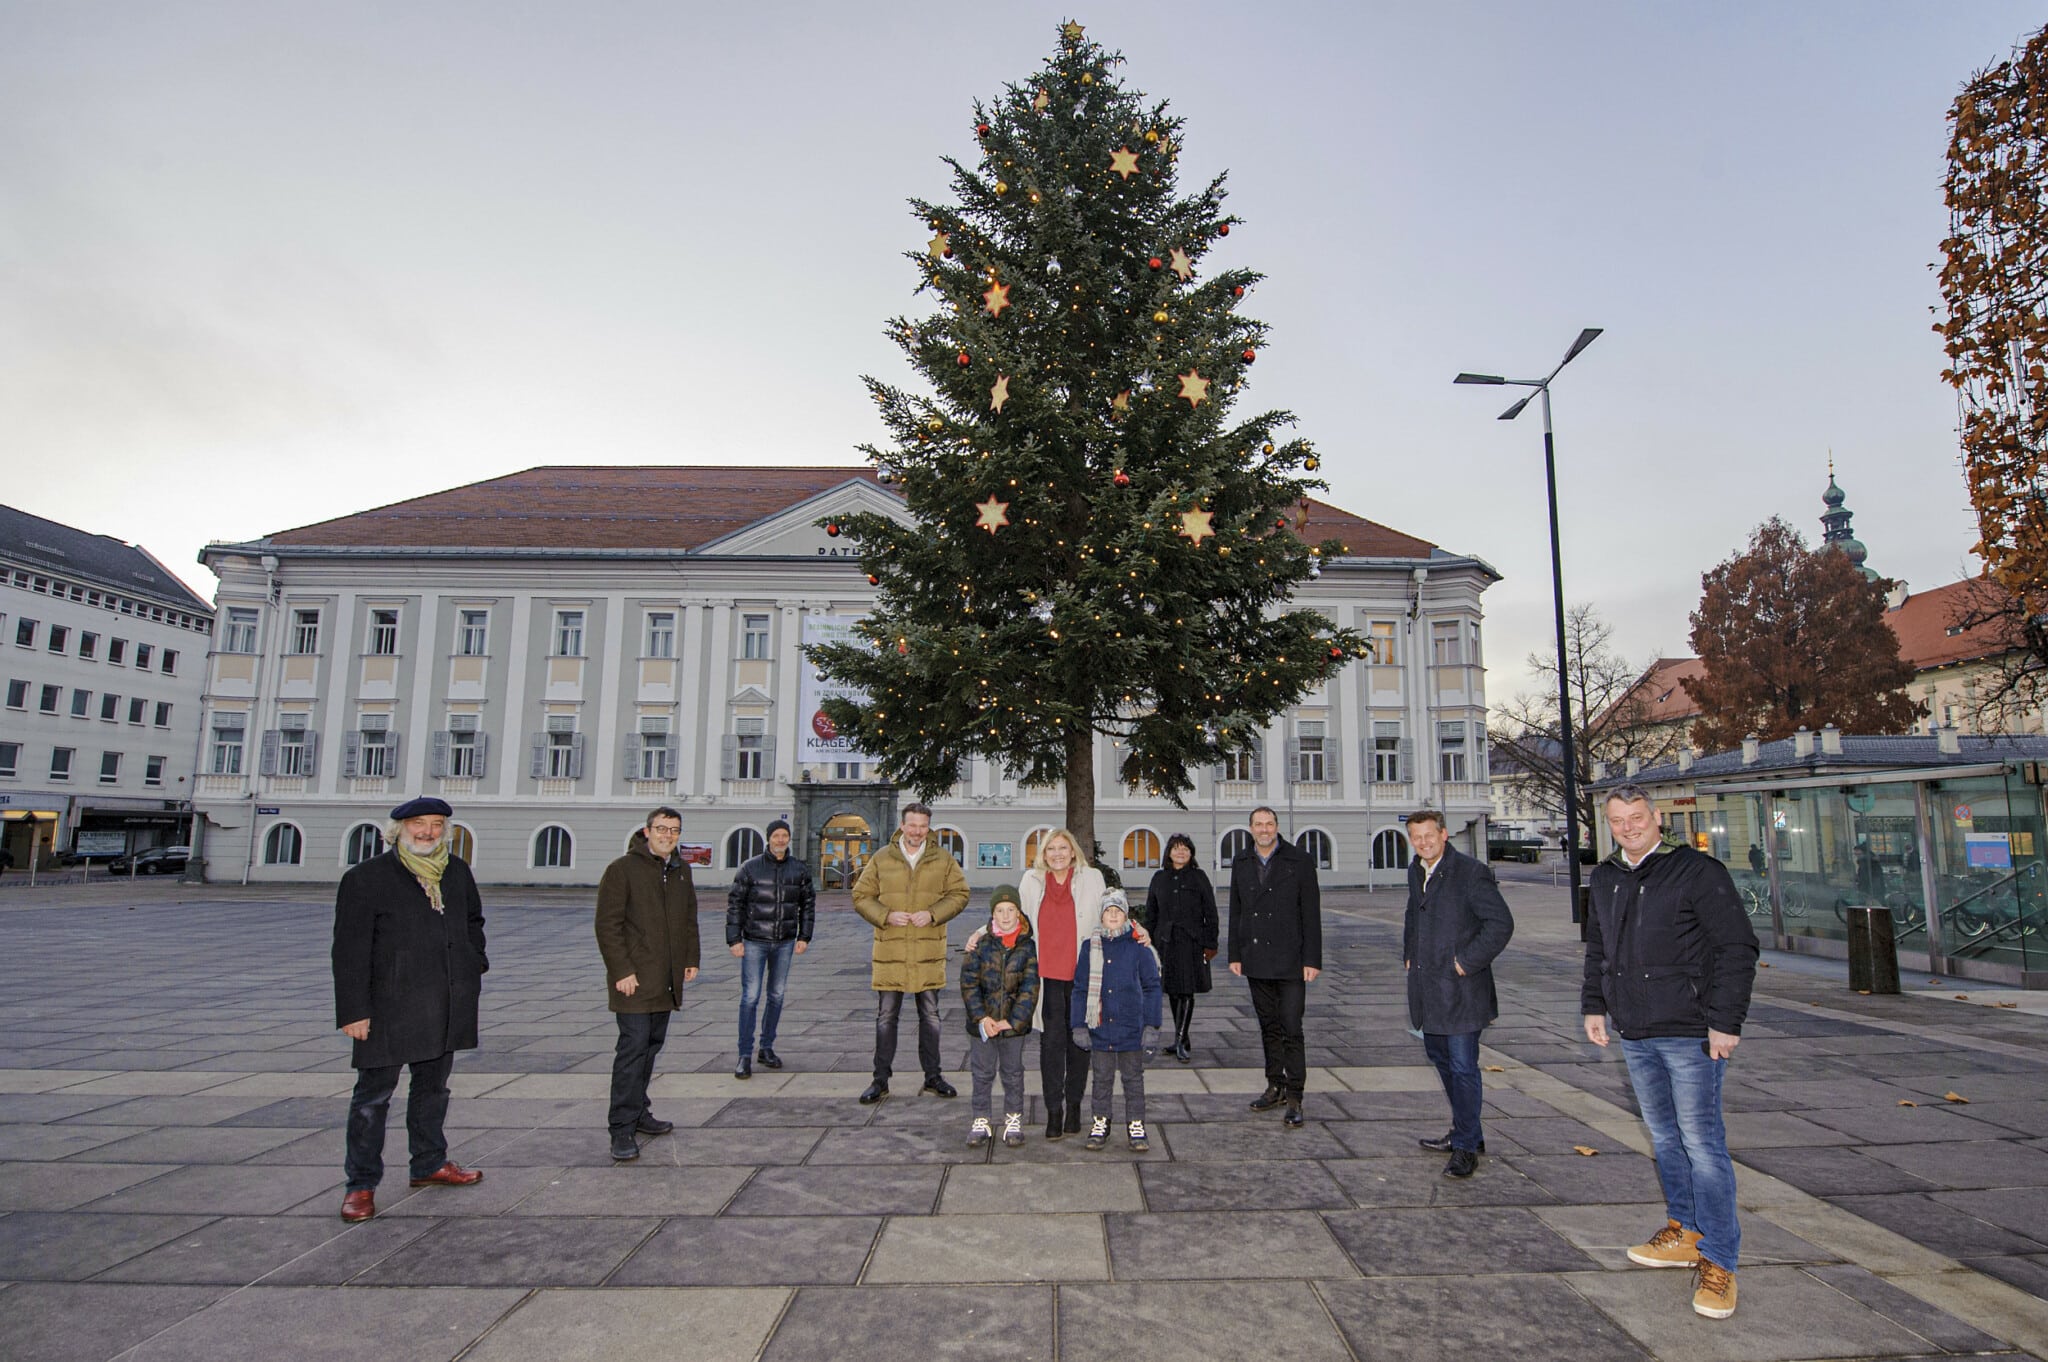 Vertreter des Stadtsenates und des Gemeinderates vor dem beleuchteten Christbaum am Neuen Platz. Neben der Bürgermeisterin stehen die beiden Kinder Leopold und Taddäus.